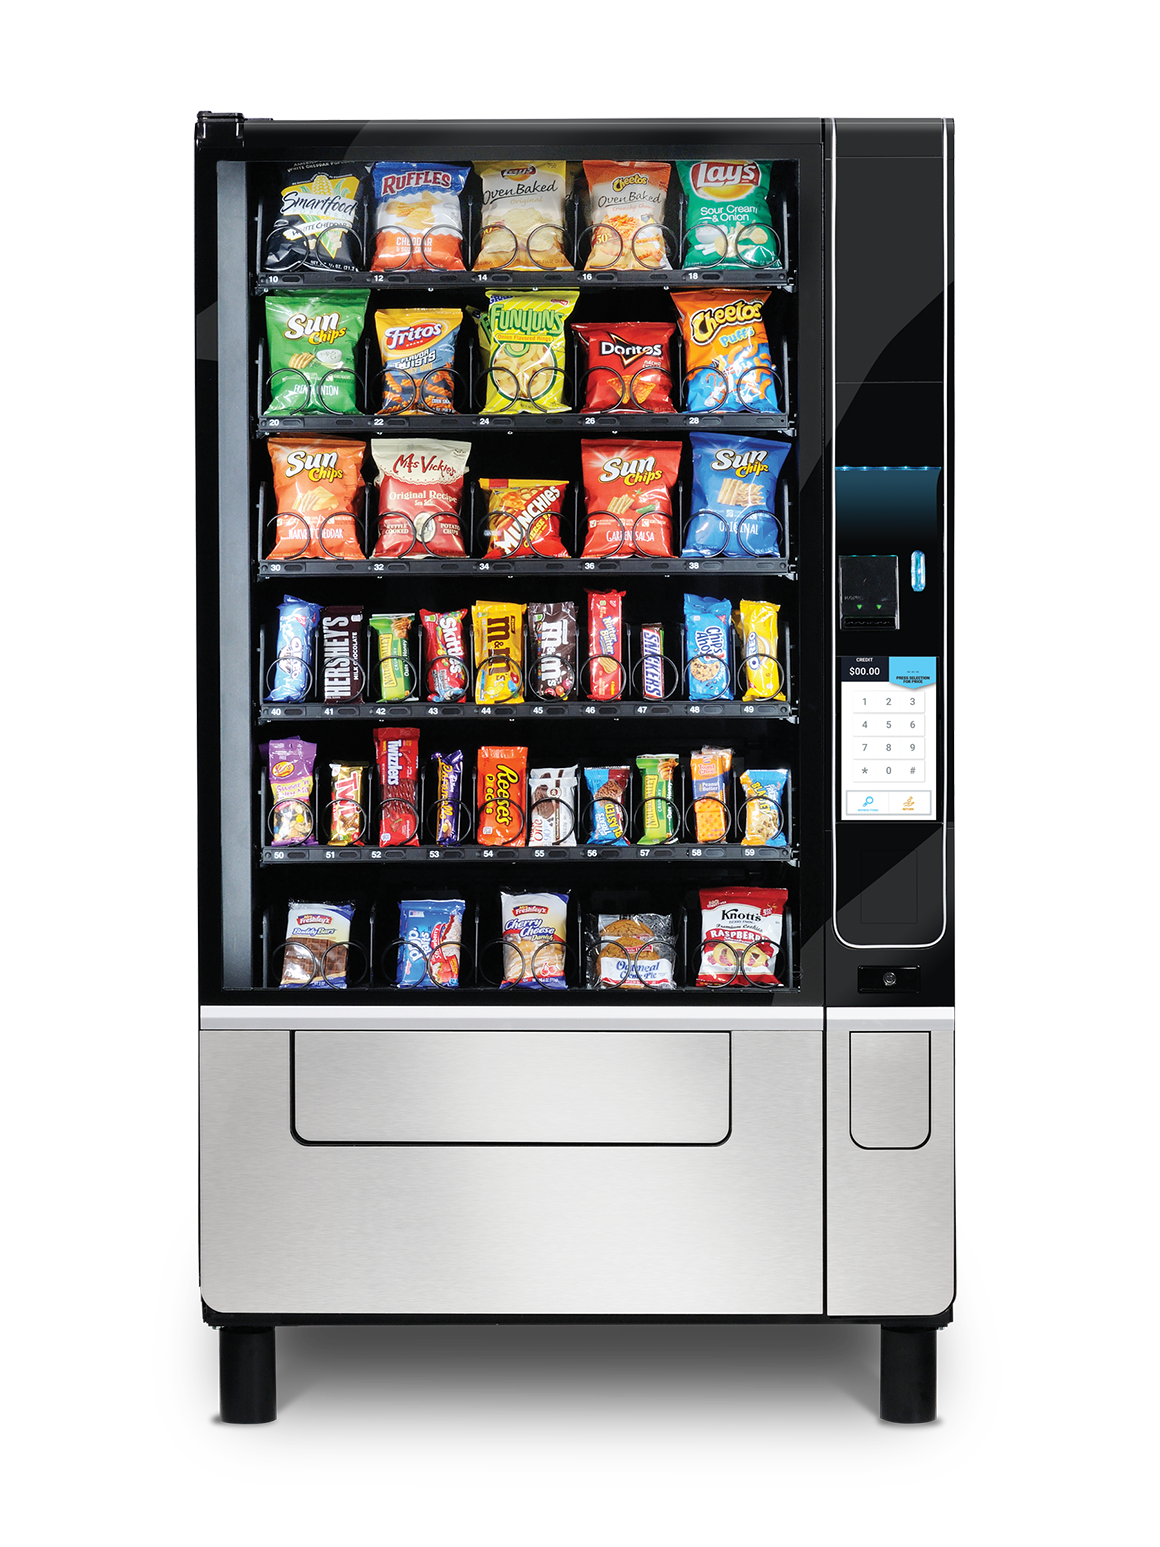 Evoke Snack 5 Vending Machine